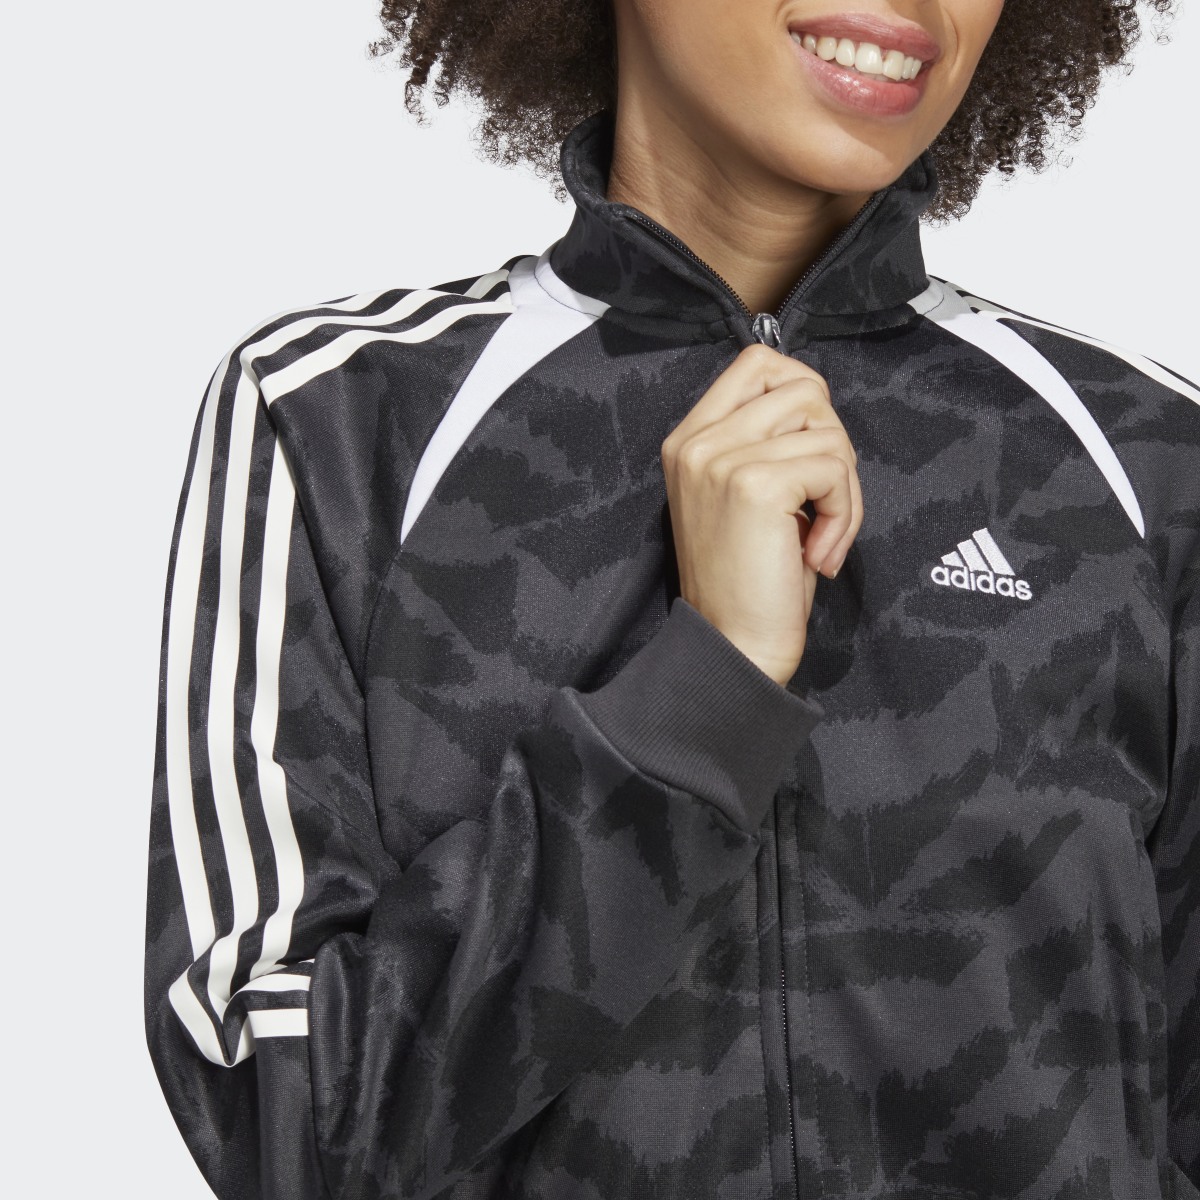 Adidas Tiro Suit Up Lifestyle Track Jacket. 11